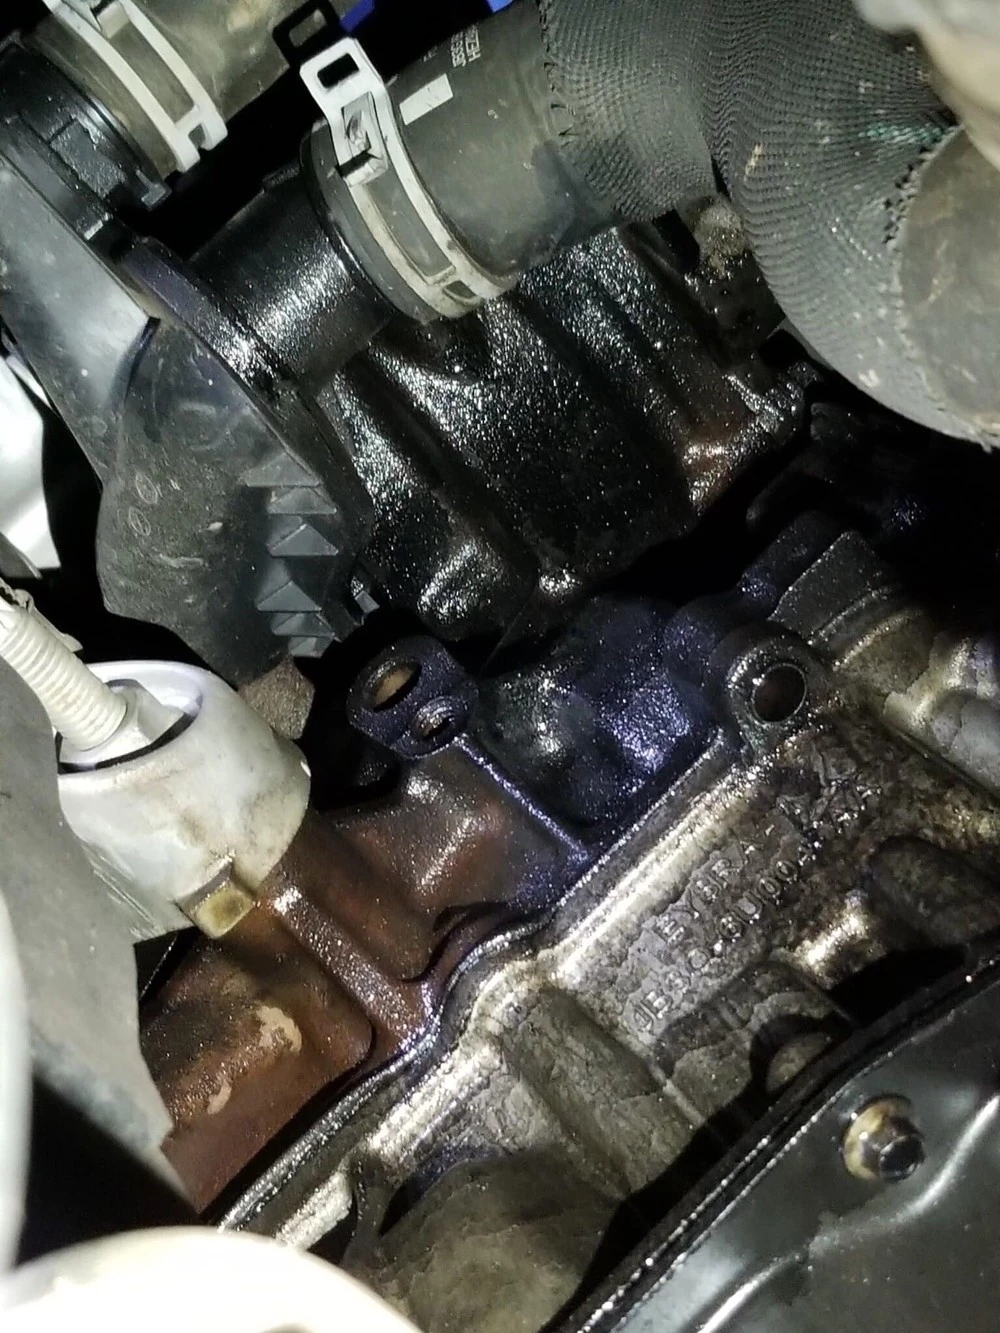 Hiện tượng rò rỉ dầu trên một chiếc Ford sử dụng động cơ Bi-Turbo 2.0L